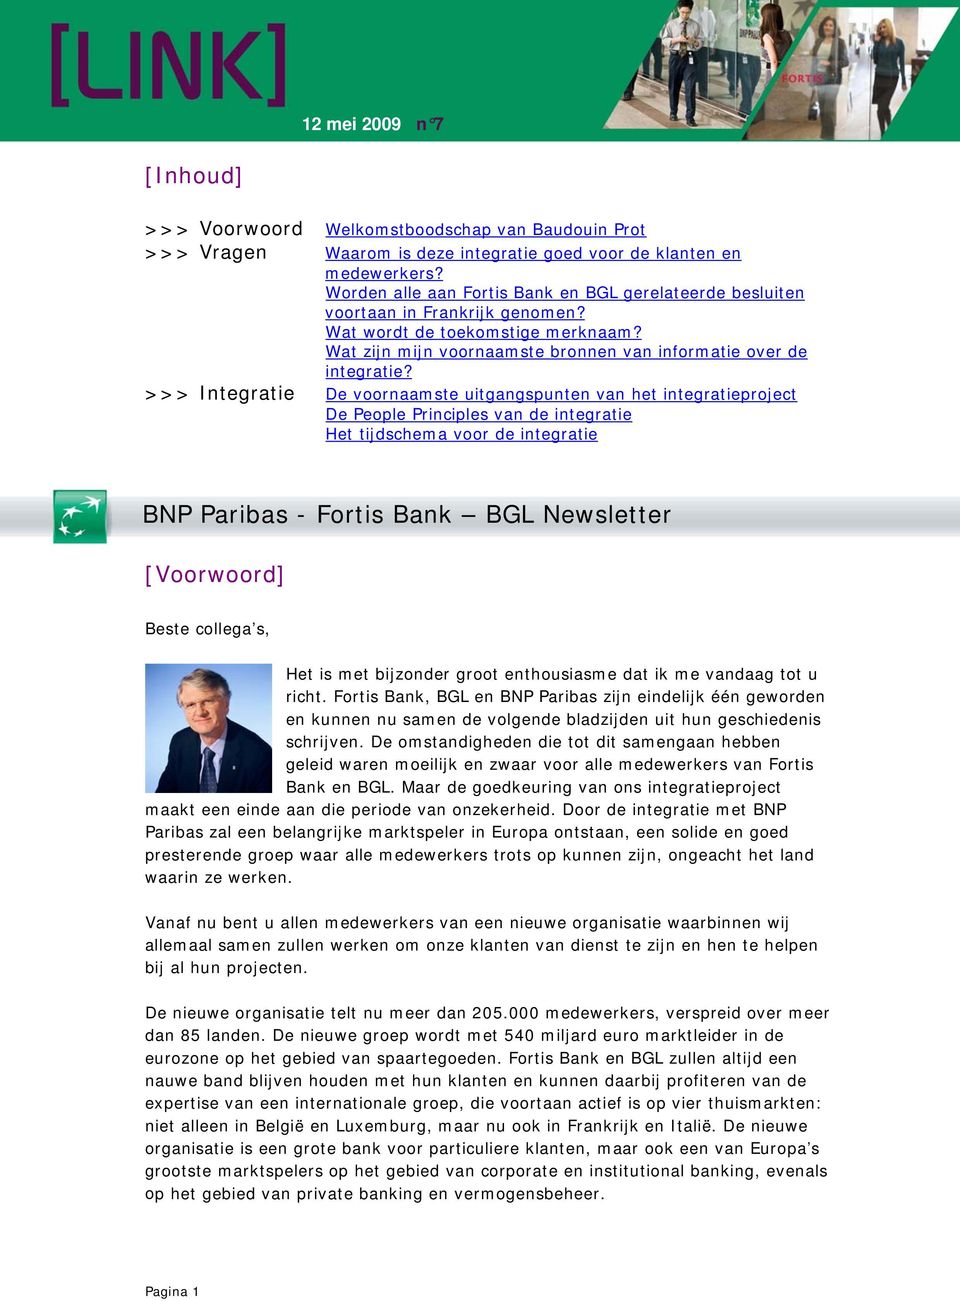 >>> Integratie De voornaamste uitgangspunten van het integratieproject De People Principles van de integratie Het tijdschema voor de integratie BNP Paribas - Fortis Bank BGL Newsletter [Voorwoord]